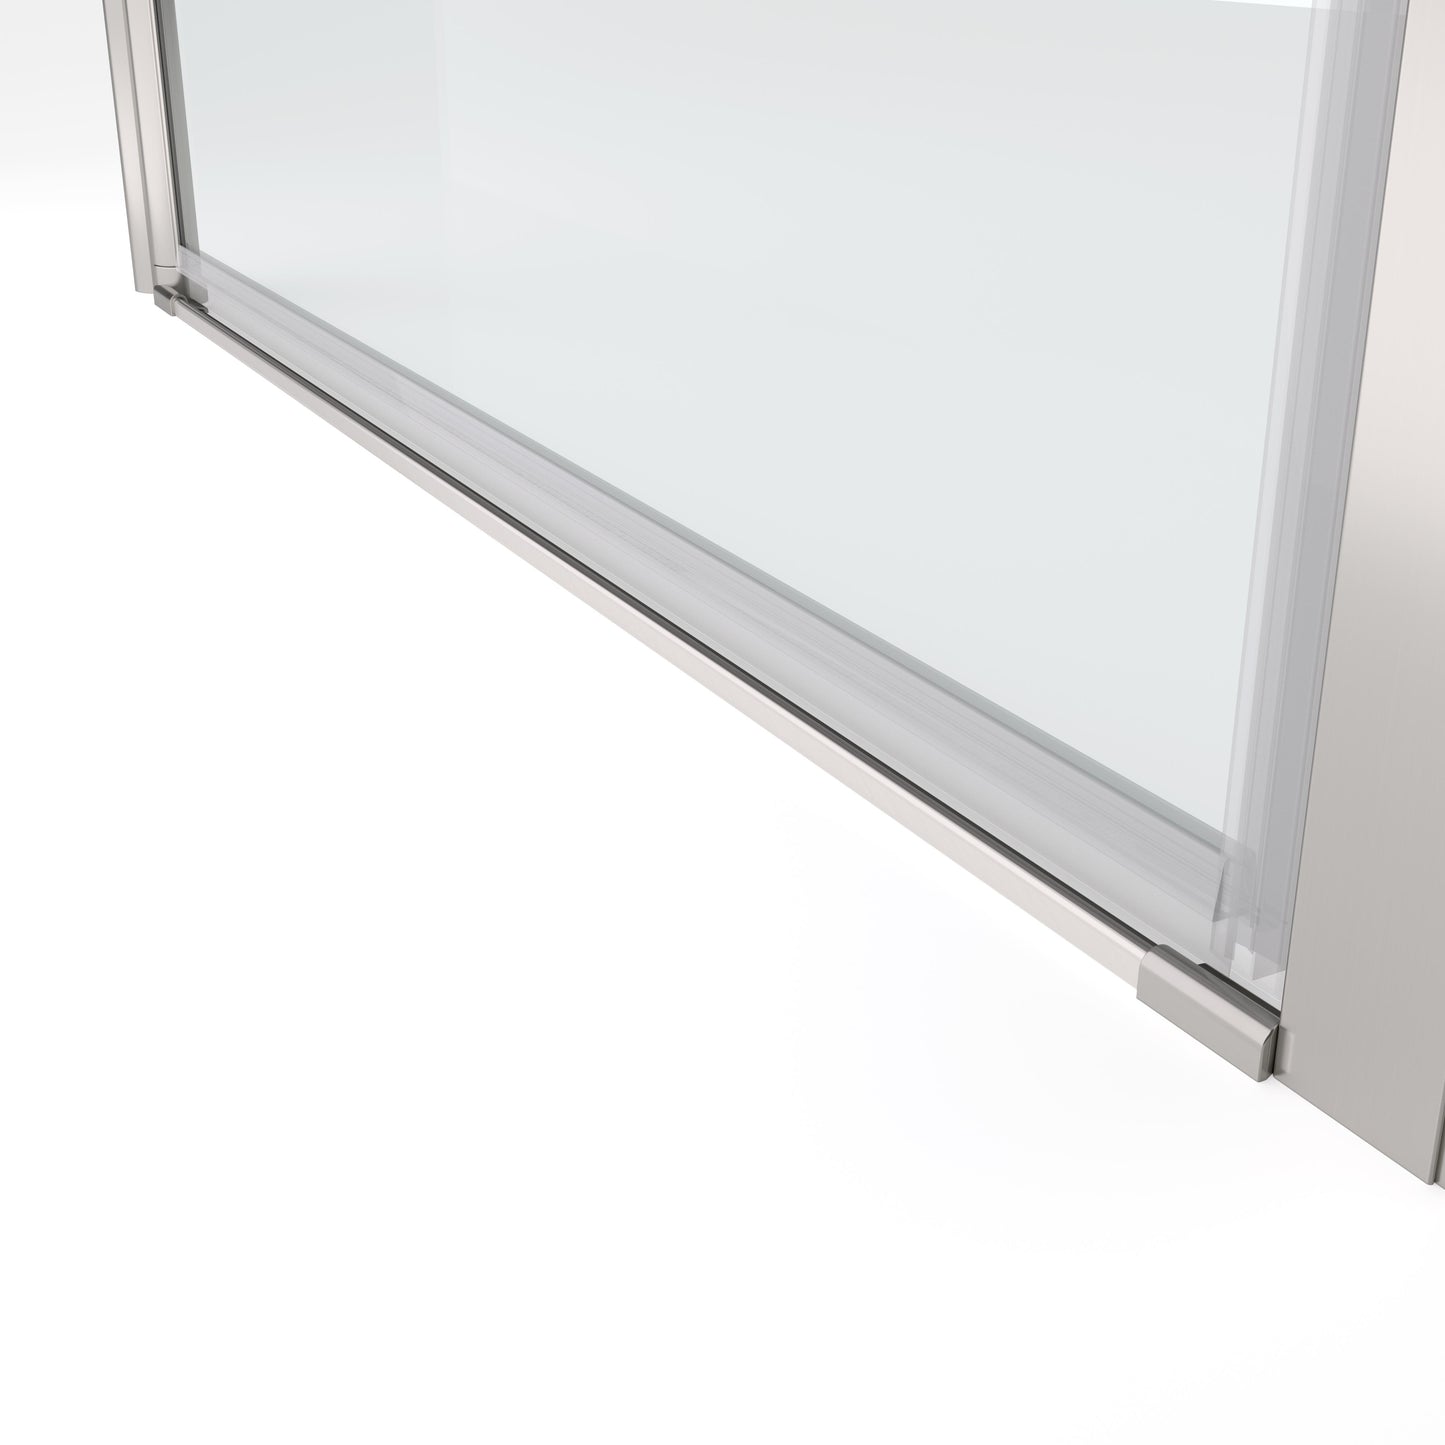 chrome framed shower door pivot